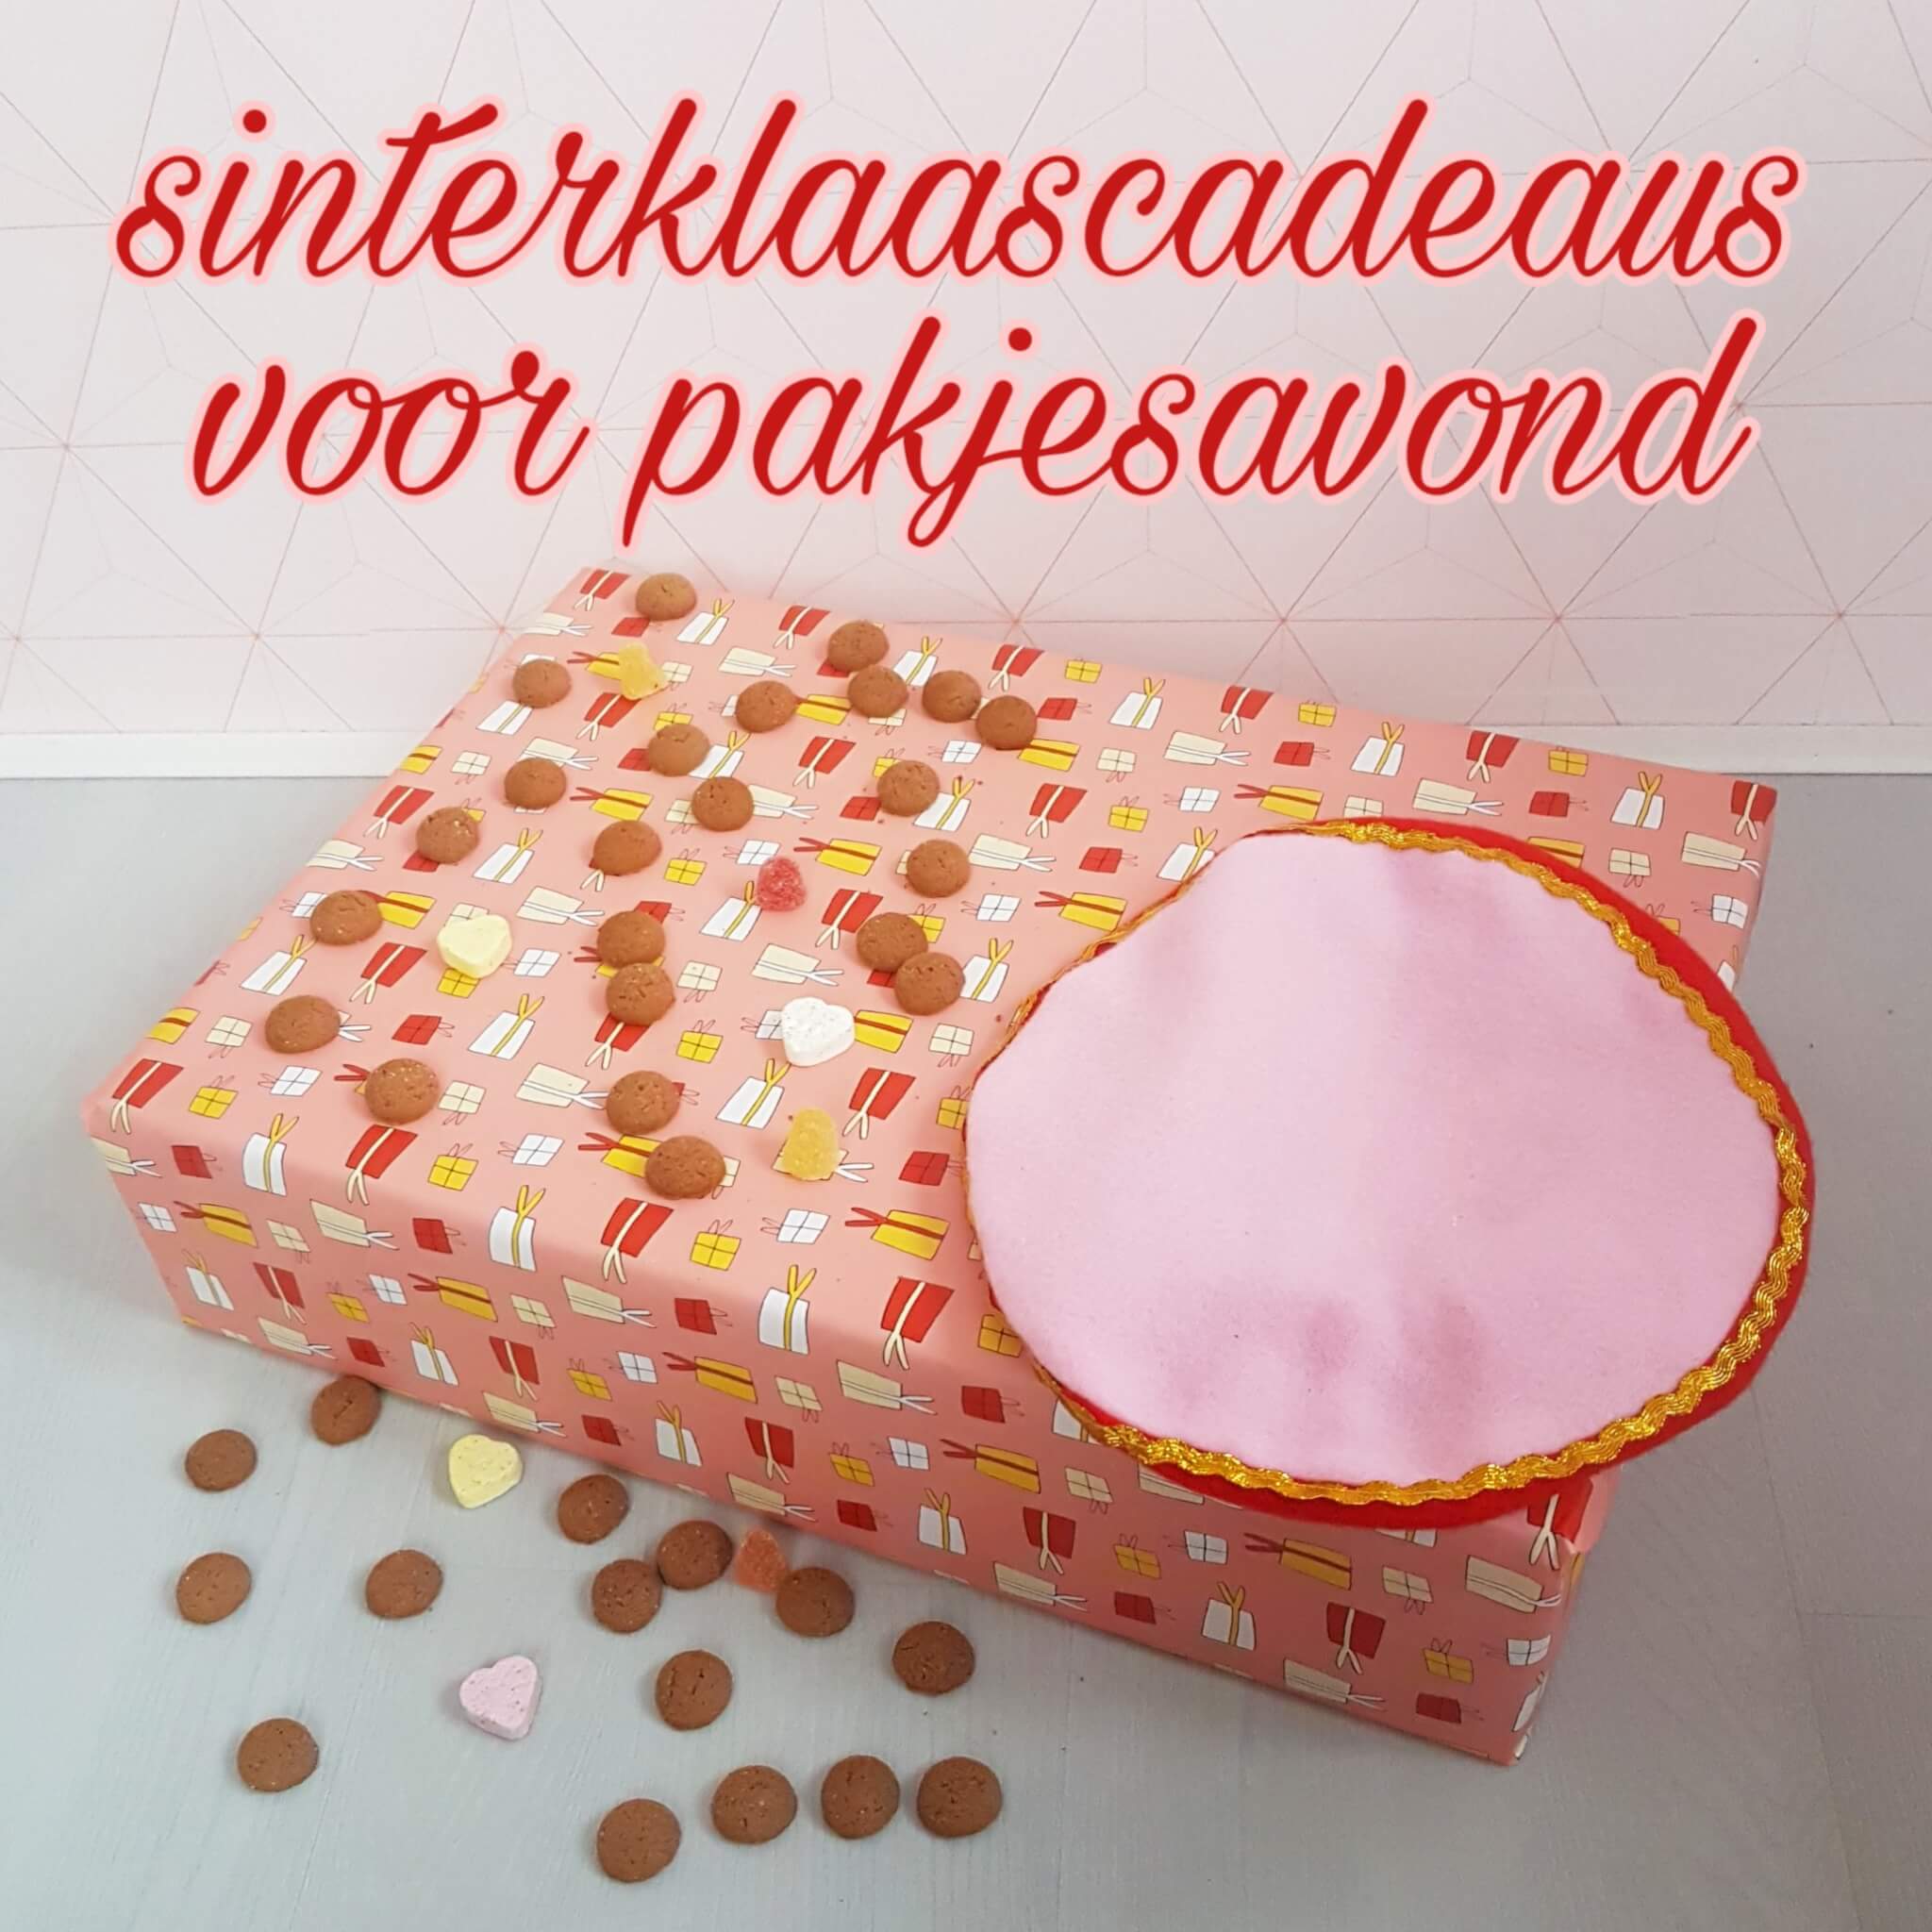 Bron zuiden Lelie Sinterklaascadeaus pakjesavond: de leukste cadeau ideeën voor de Sint Leuk  met kids